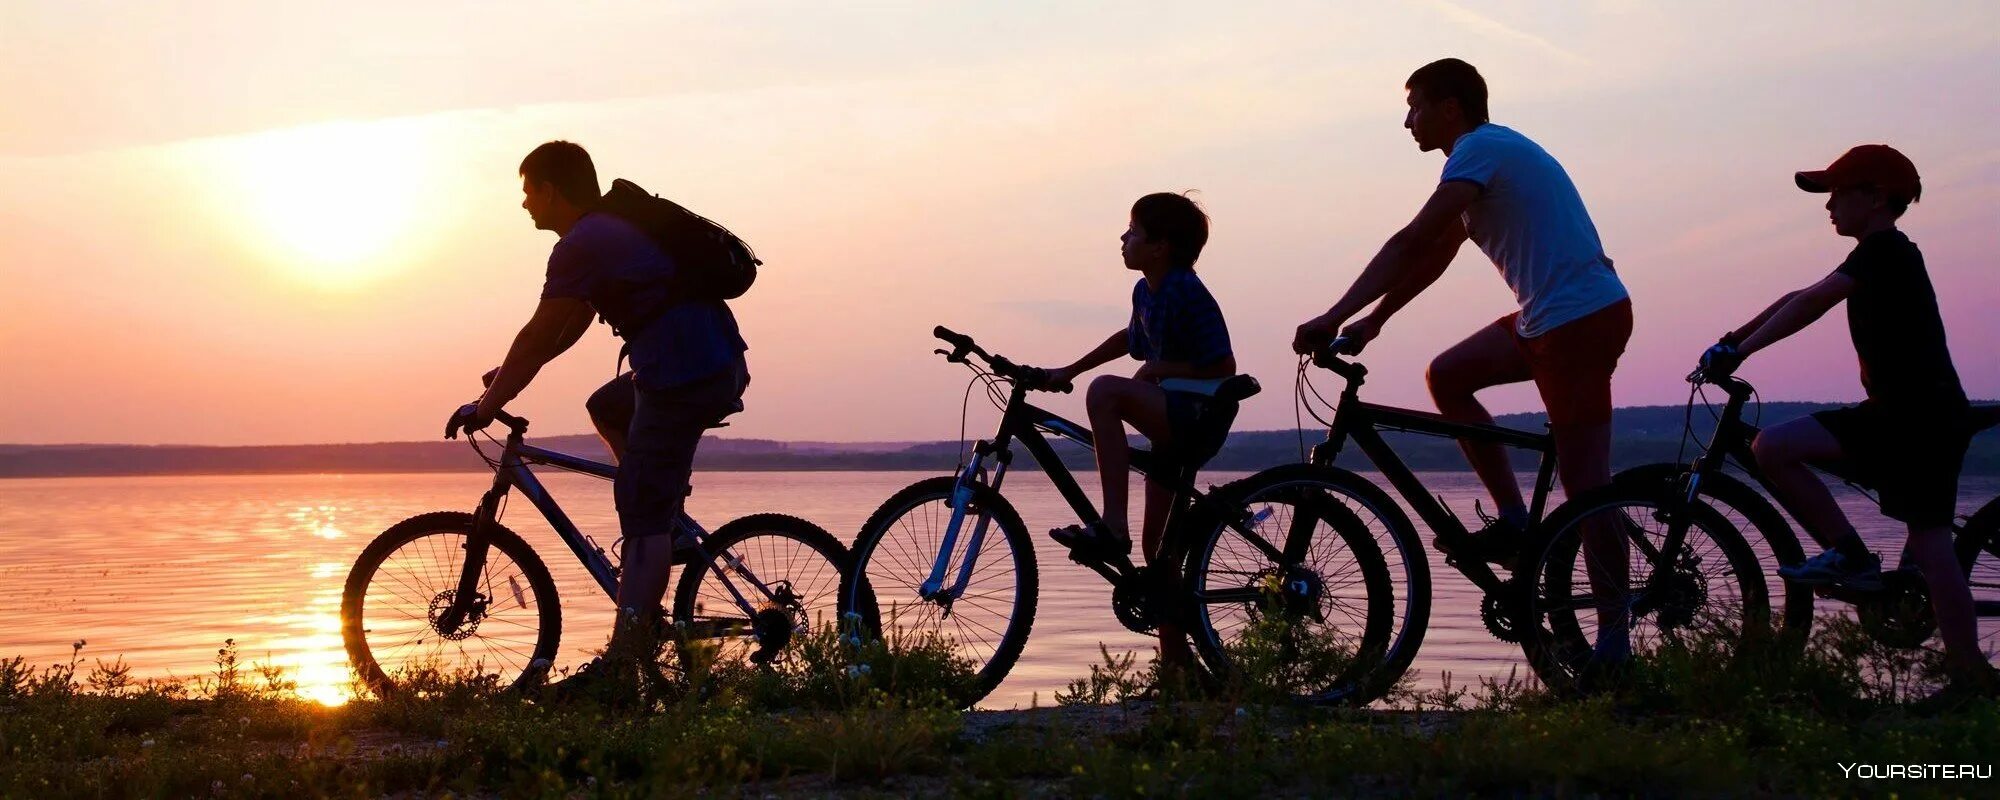 Семья на велосипедах. Велосипедисты семья. Семейная велопрогулка. Велосипедные прогулки семьей.